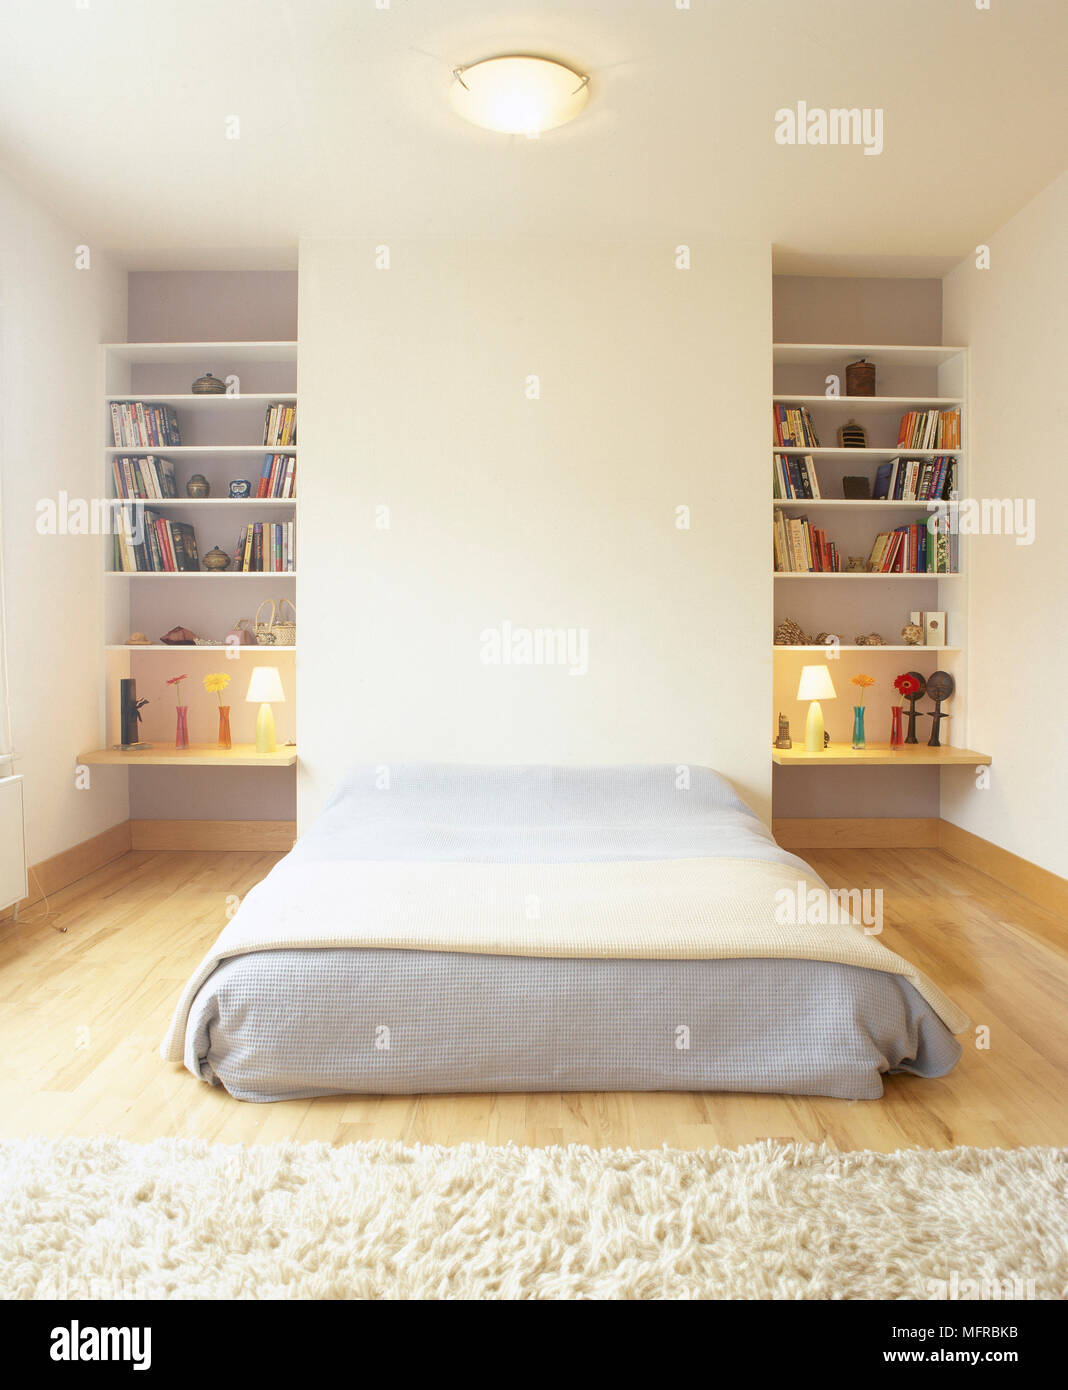 Chambre avec lit bas sur plancher en bois Photo Stock - Alamy